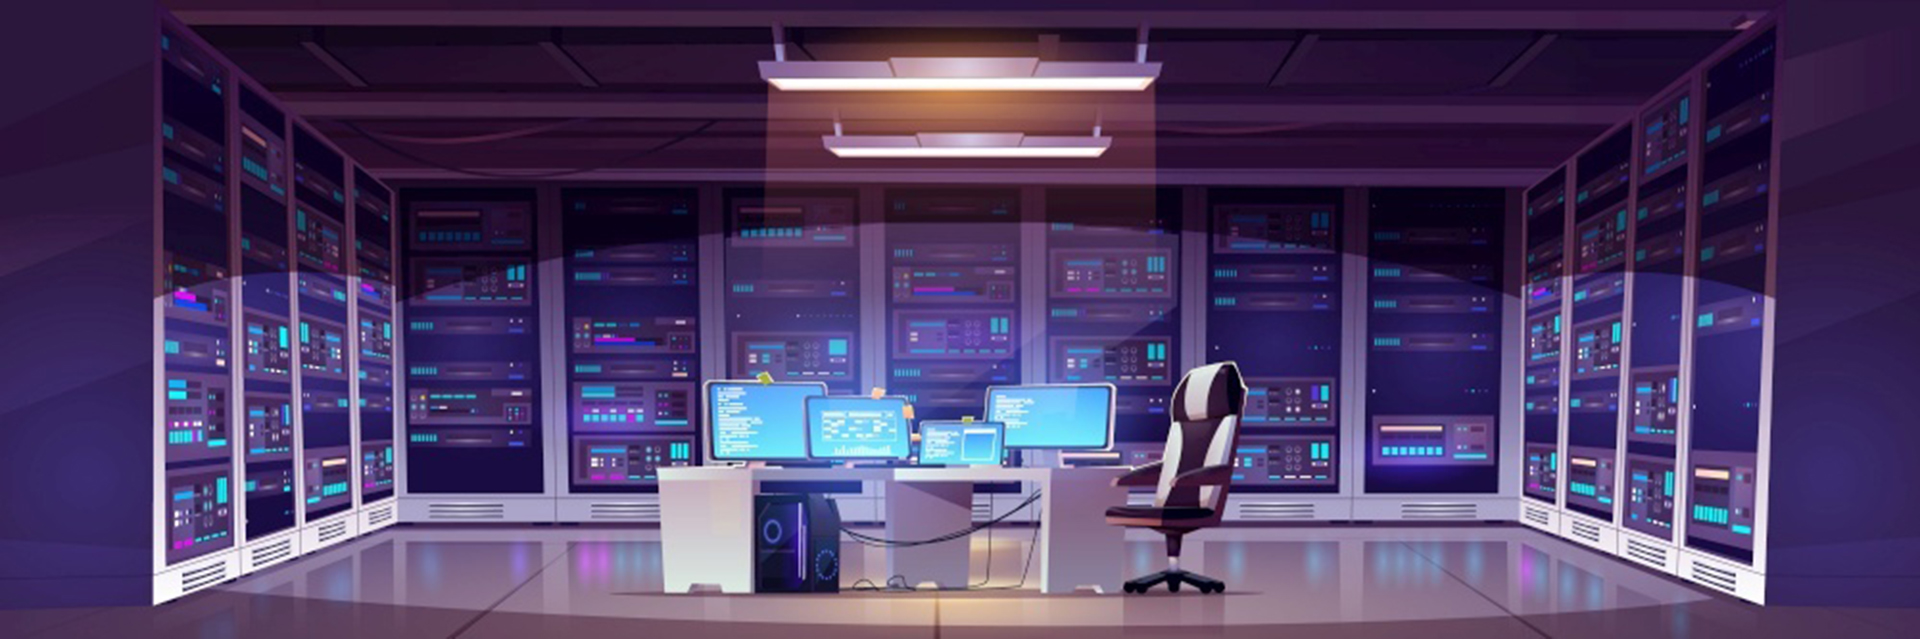 Phòng trung tâm dữ liệu với phần cứng máy chủ, ghế và bàn với màn hình máy tính.Vector hoạt hình nội thất văn phòng lưu trữ thông tin với bảng điều khiển, giá đỡ với phần cứng cho mạng